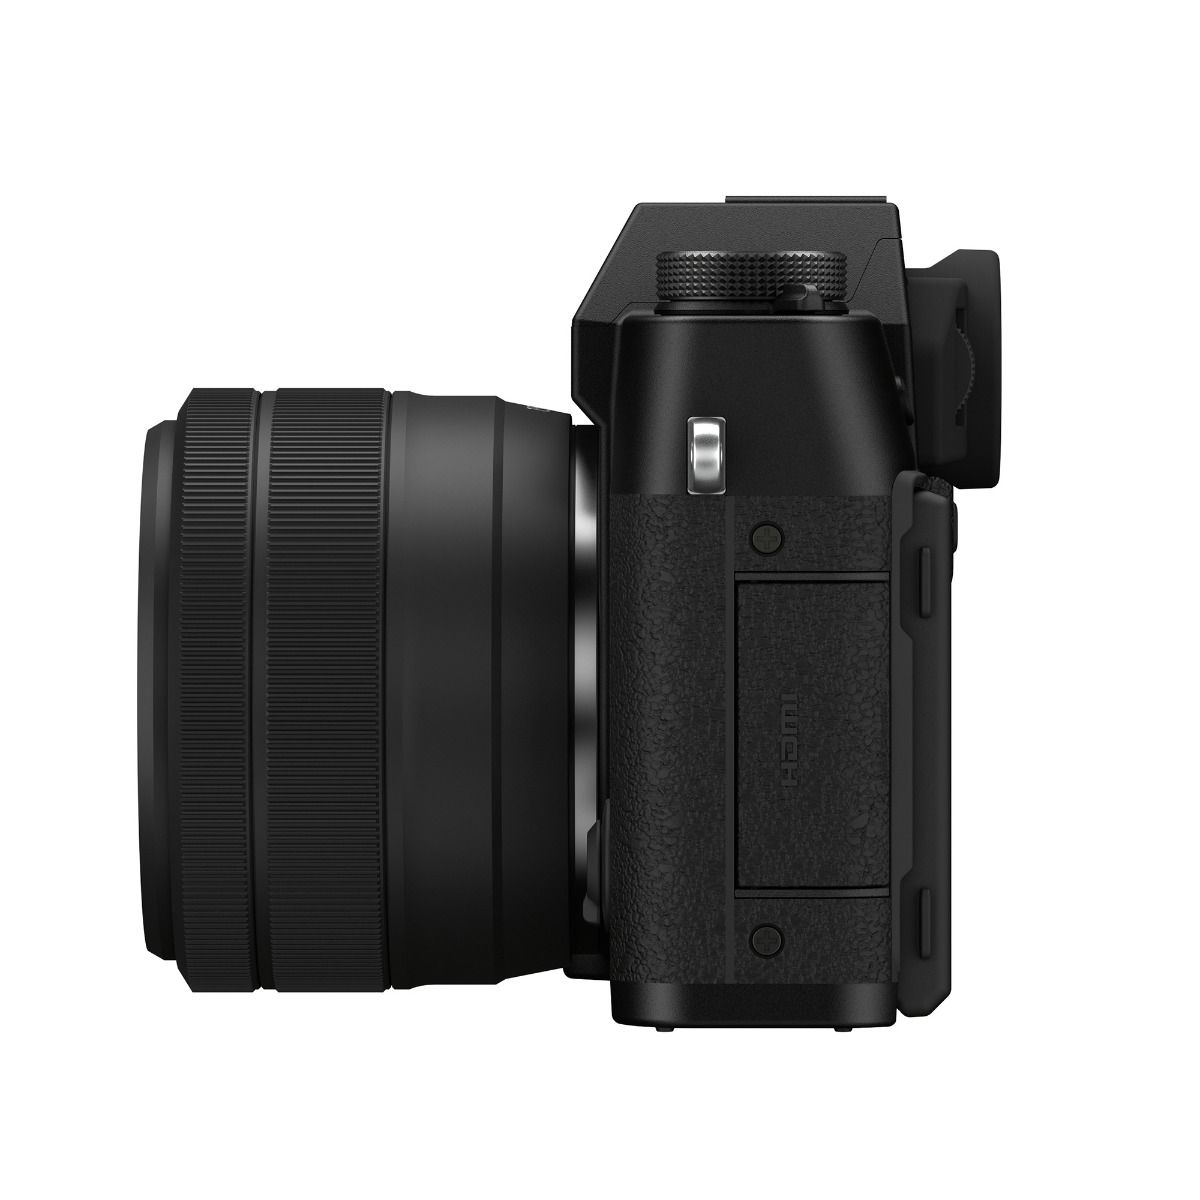 Fujifilm X-T30 II Mirrorless Camera Body & XC 15-45mm F3.5-5.6 OIS PZ Lens - Black